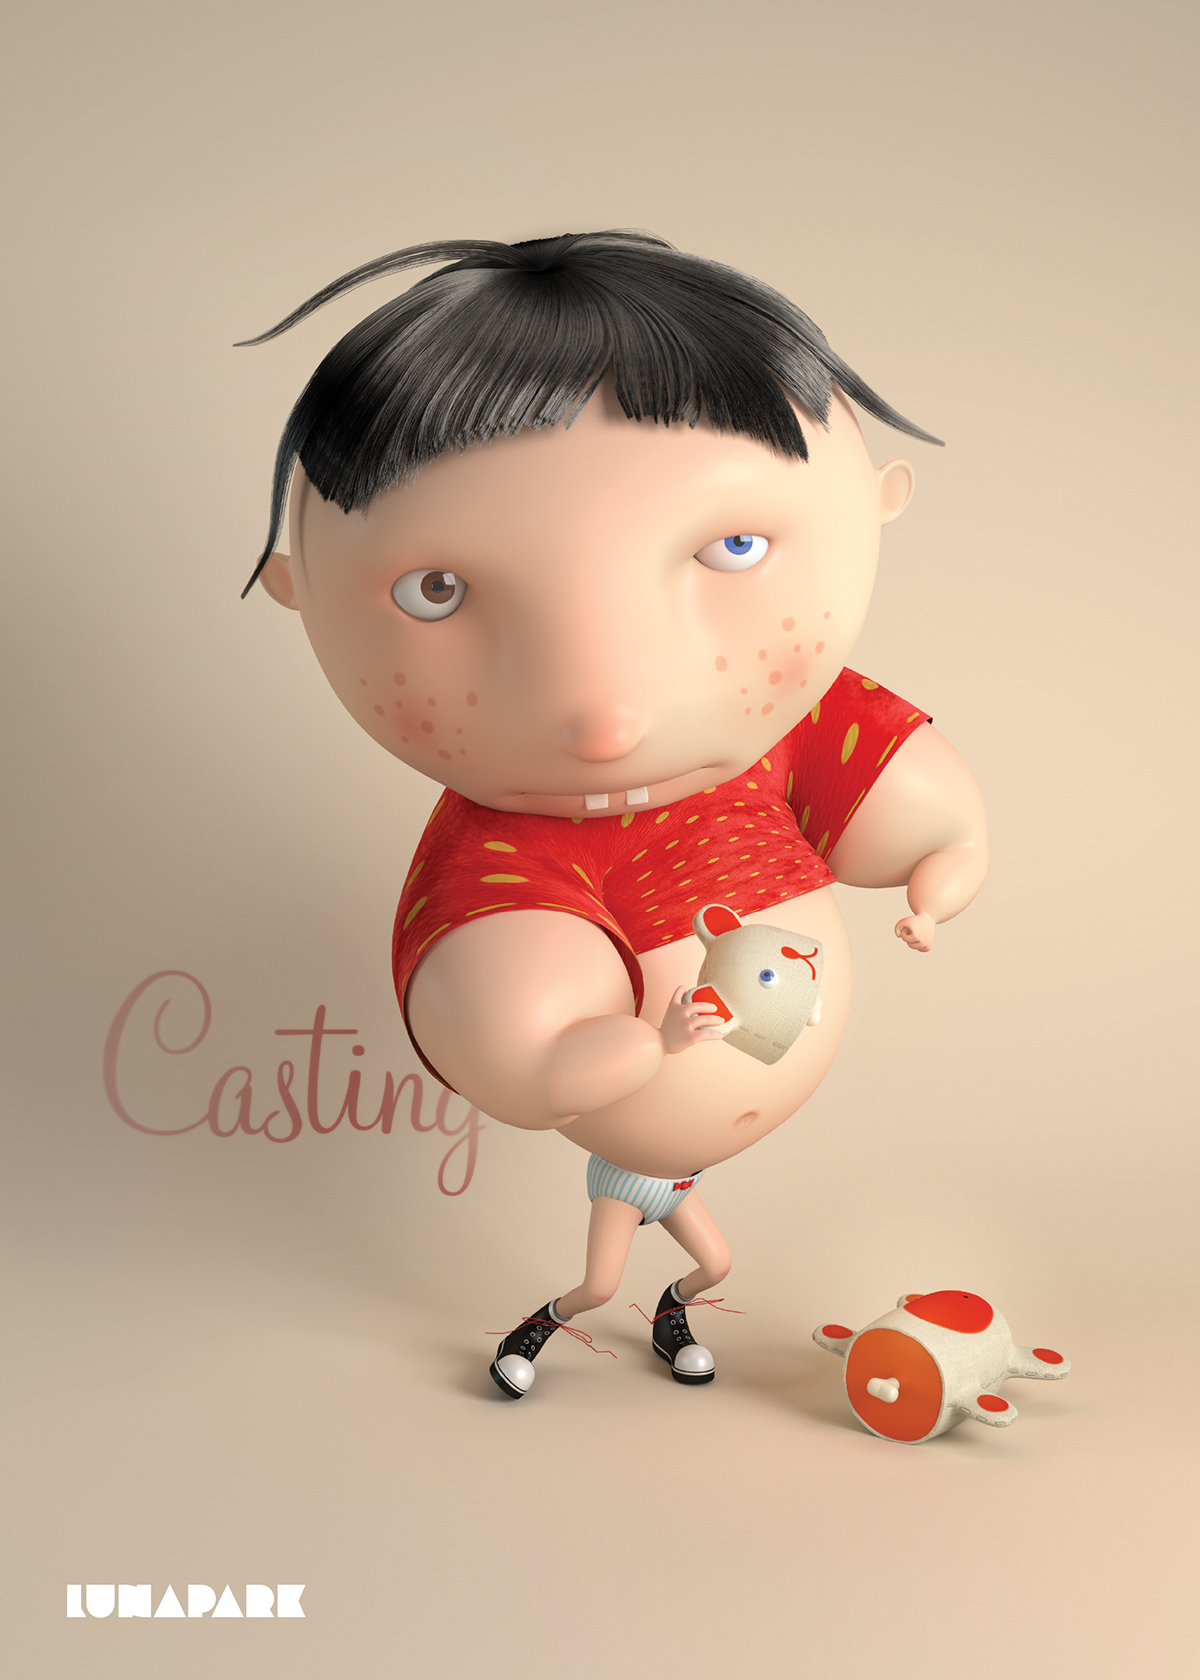 casting Character design cartoon 3D cinematic artsaszka poland lunapark director short Cinema artsashka